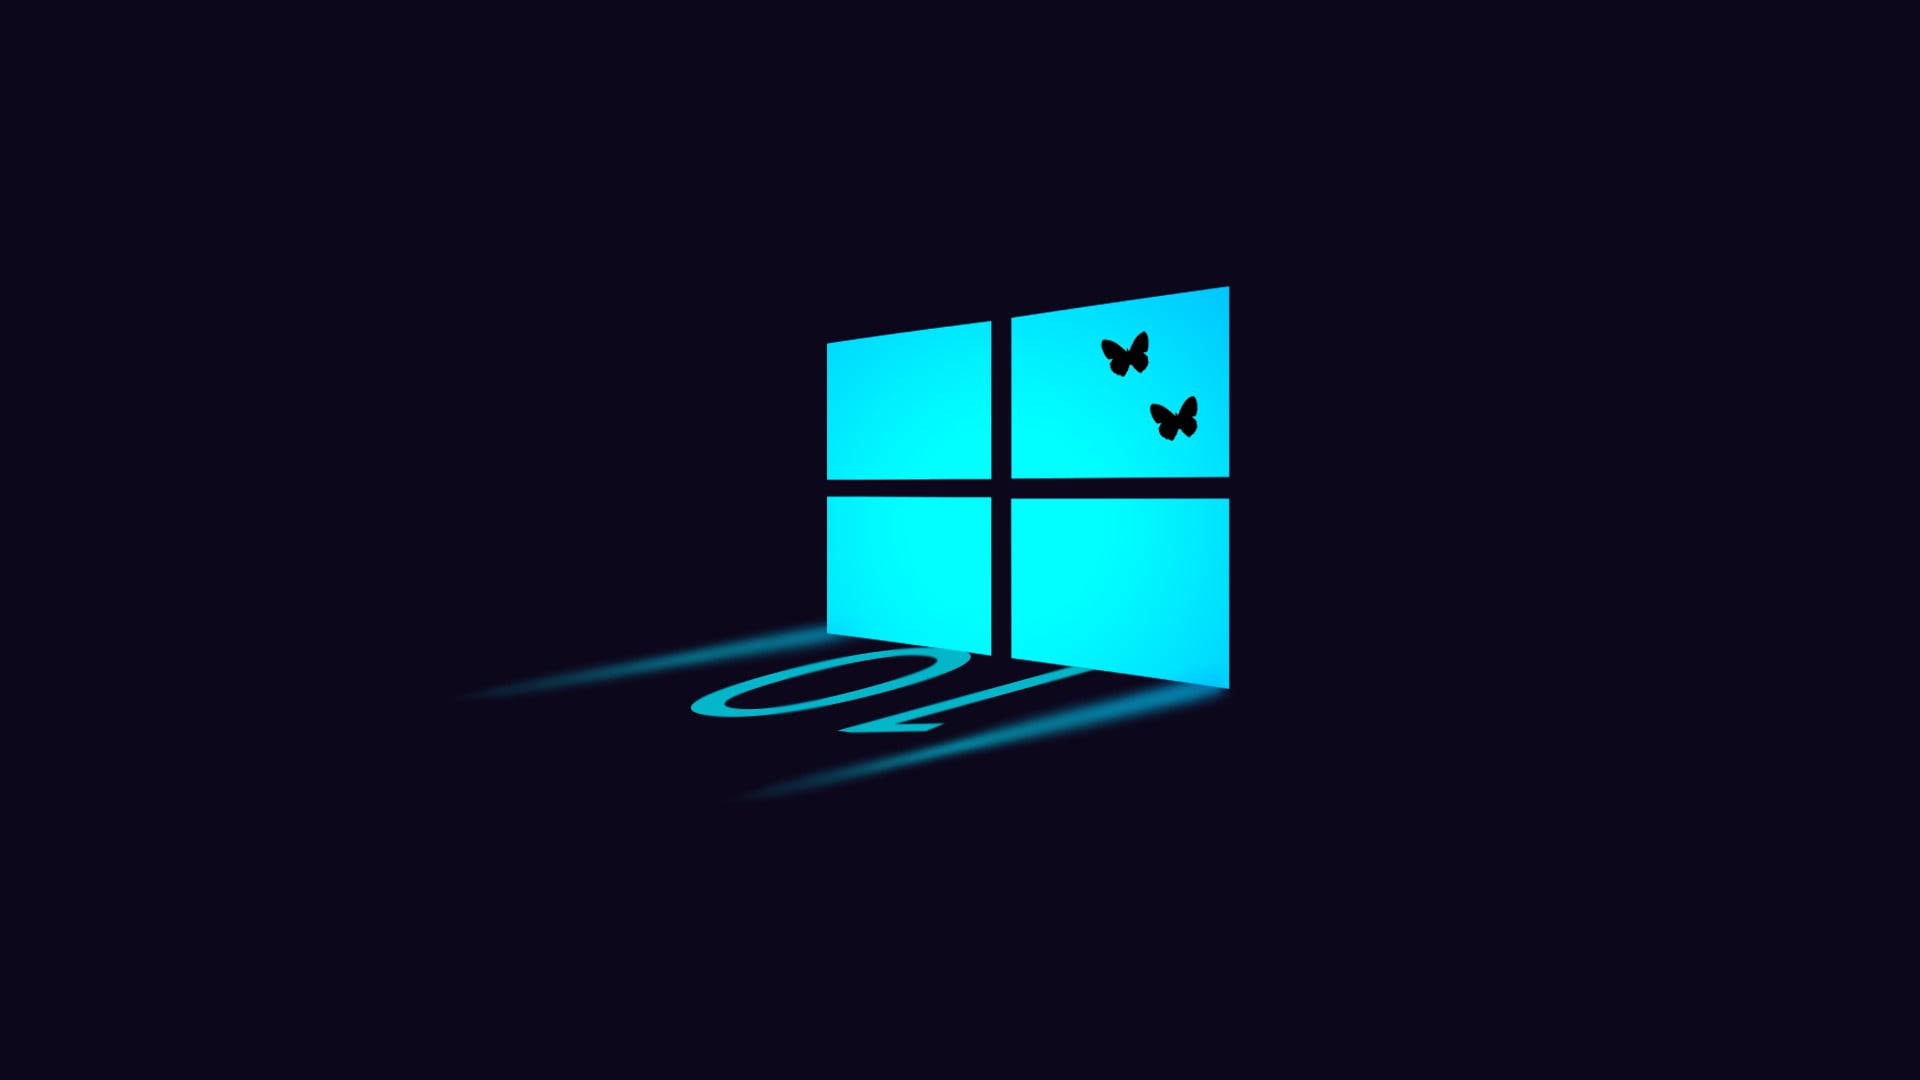 Dark Windows 10 Logo With Butterflies Background